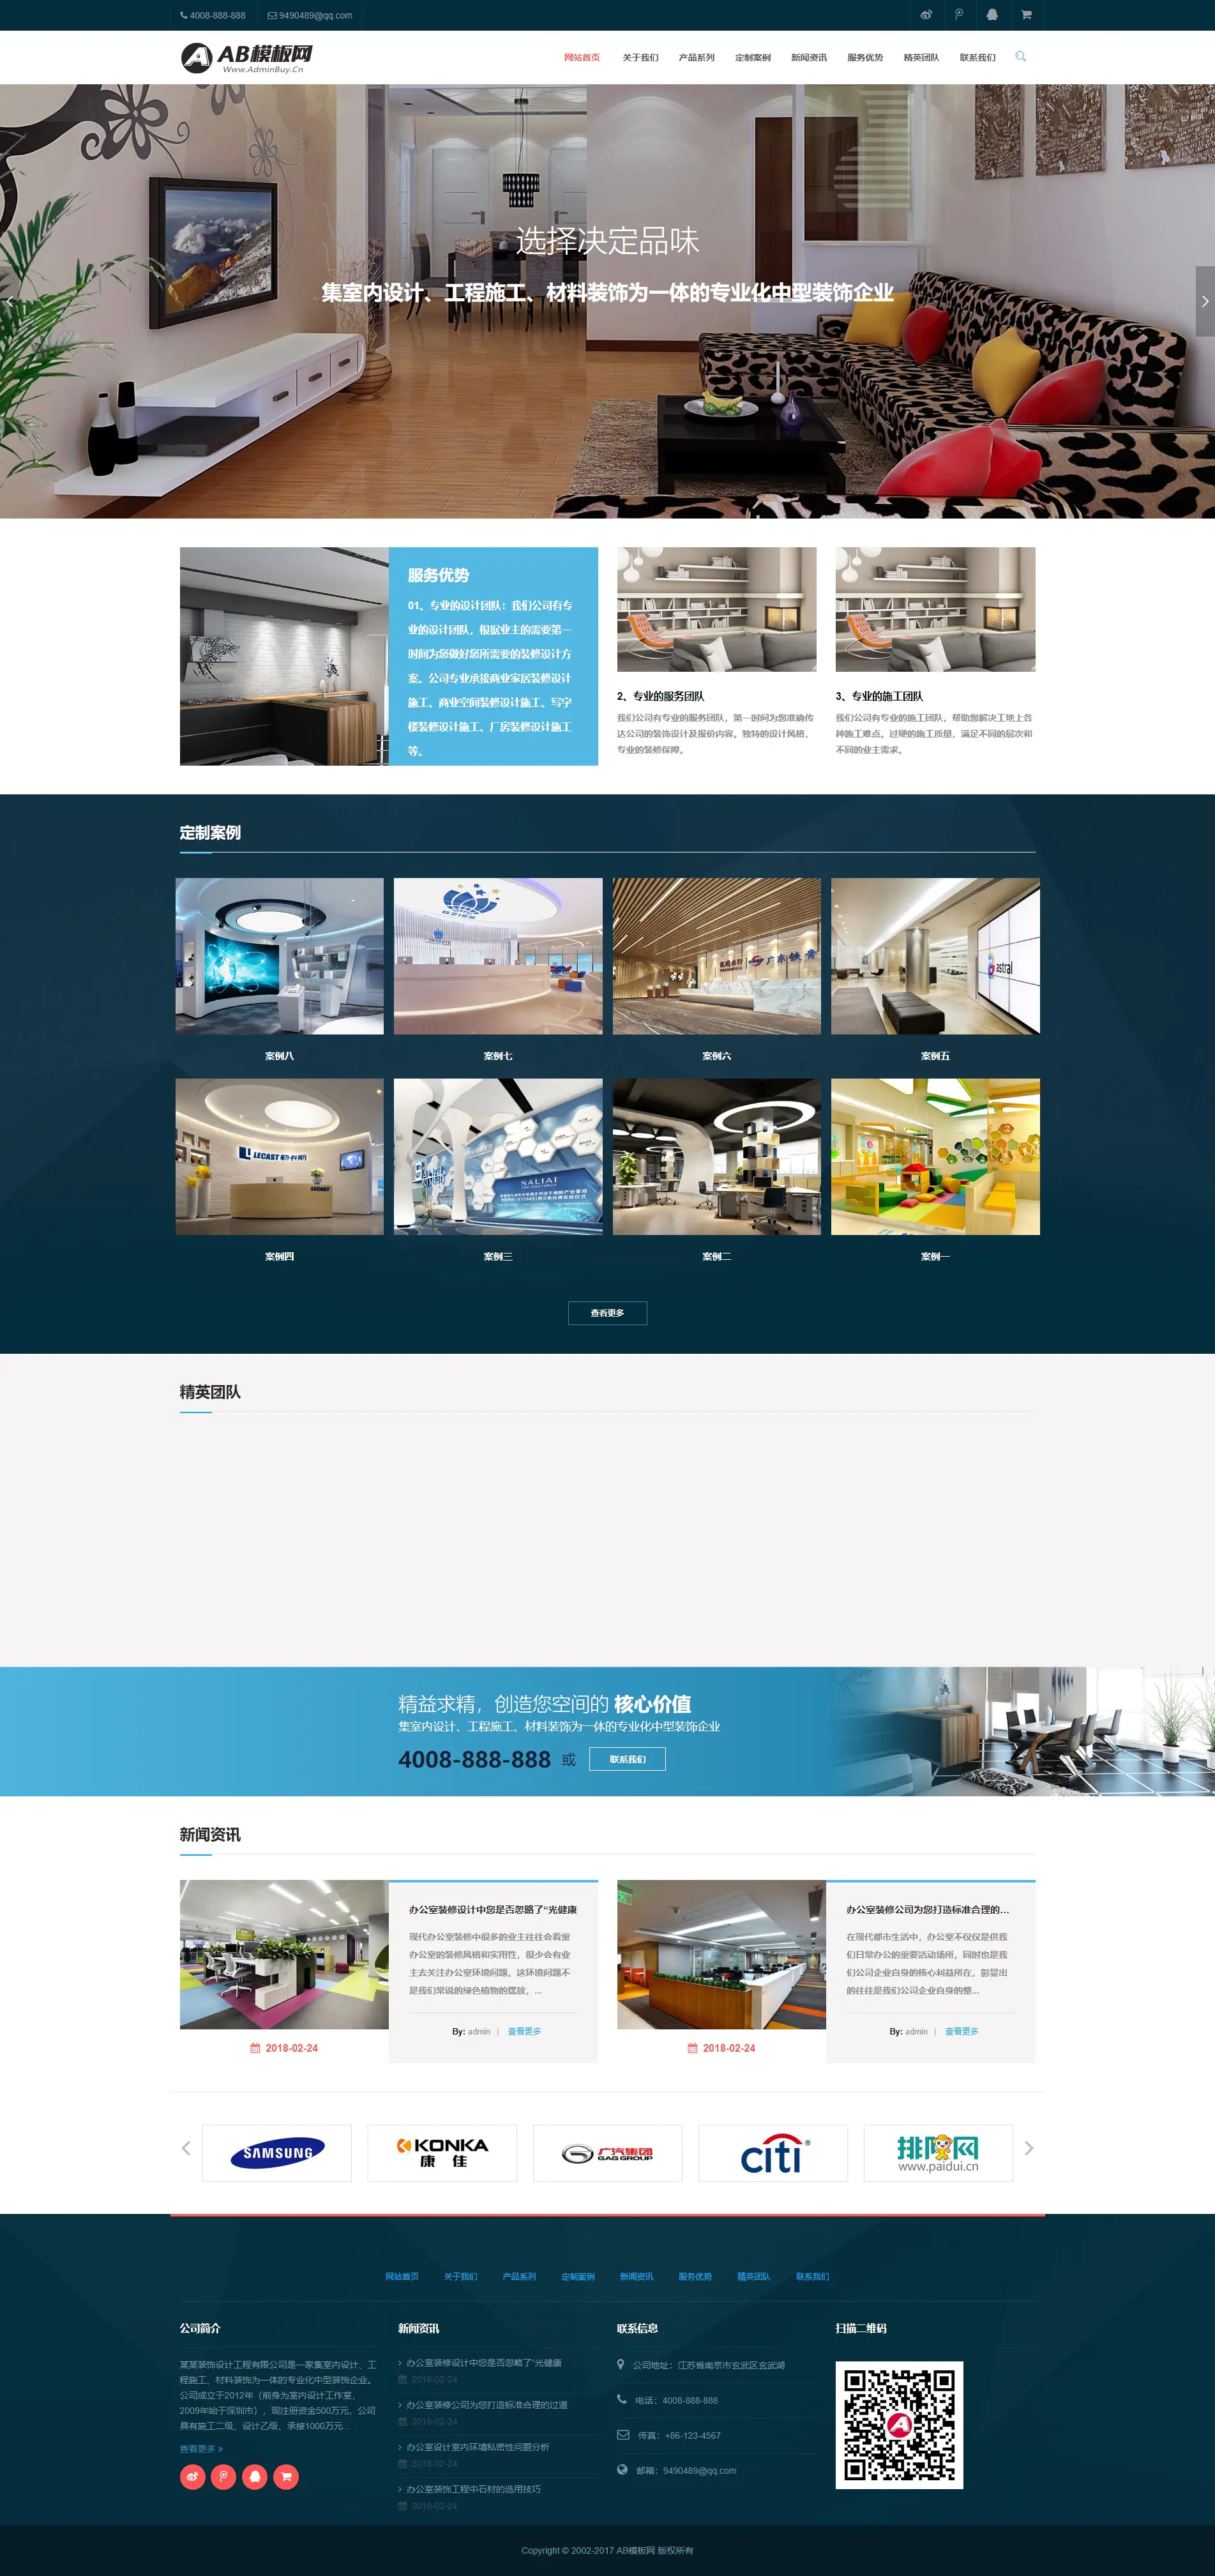 A916 深蓝色装修设计公司网站织梦dede模板源码[自顺应手机版]-零度空间